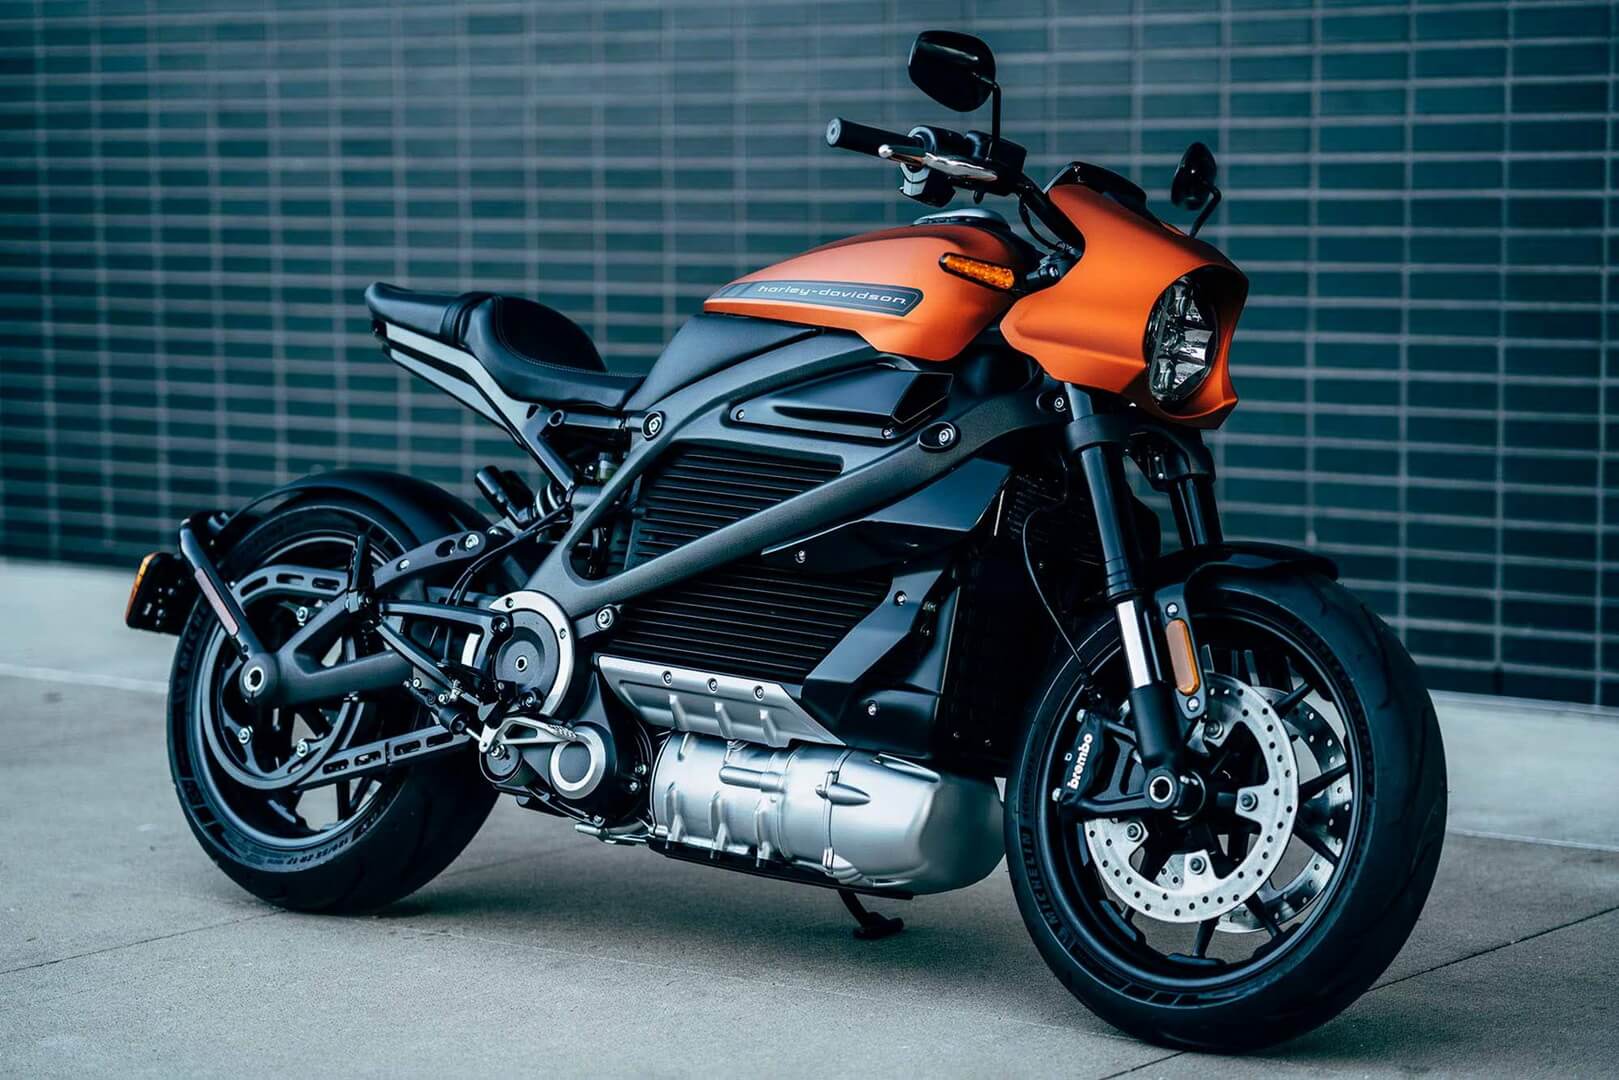 Inilunsad ng Harley-Davidson ang LiveWire, isang bagong tatak ng electric motorcycle